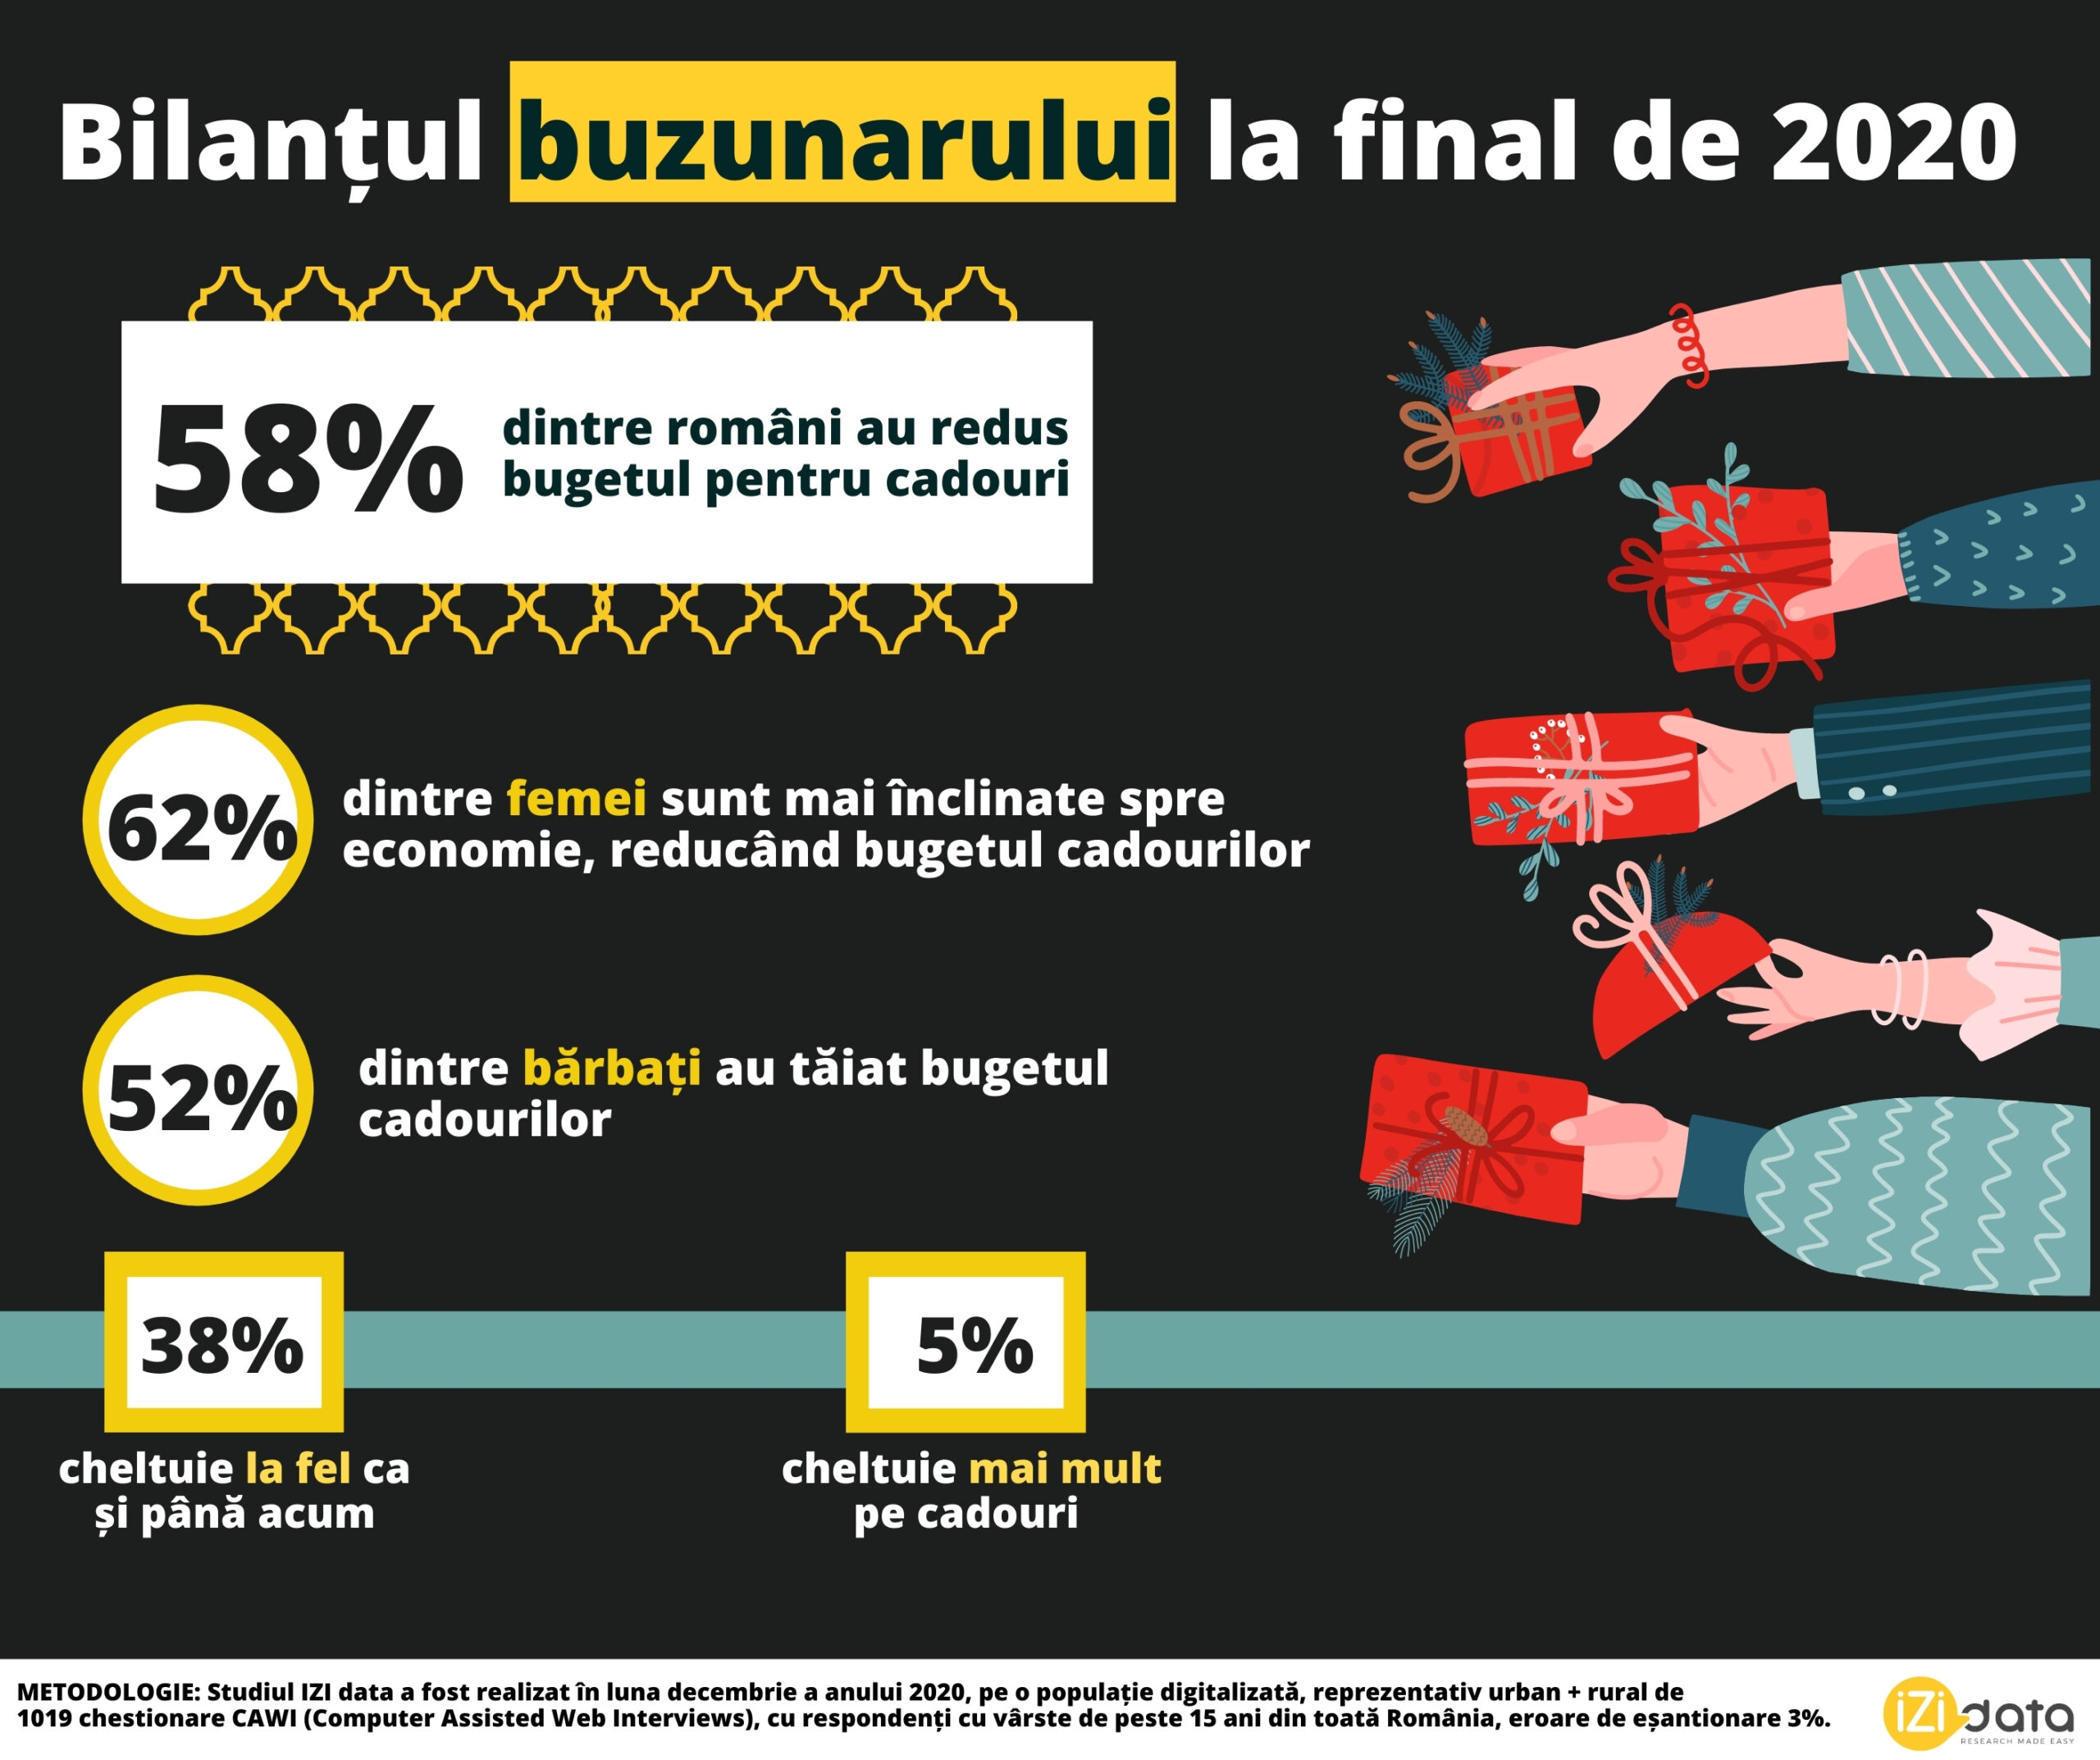 De Sărbatori, 6 din 10 români au redus bugetul de cadouri